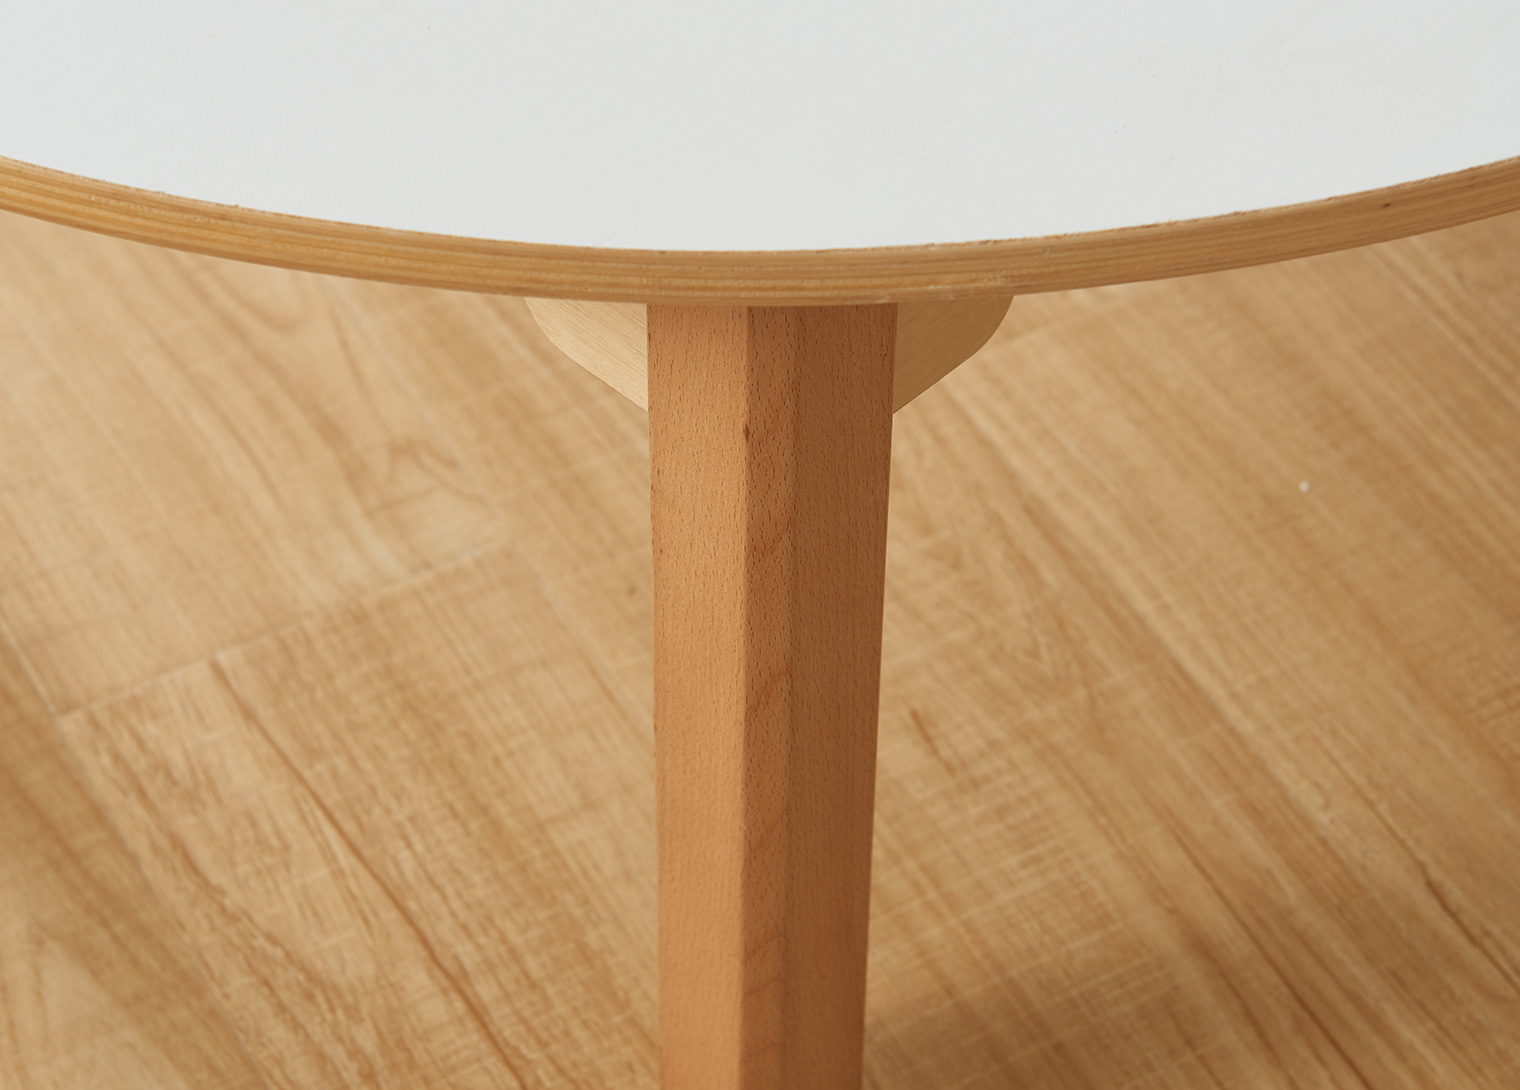 Inga Design Kids - 535H Circular Table (White)